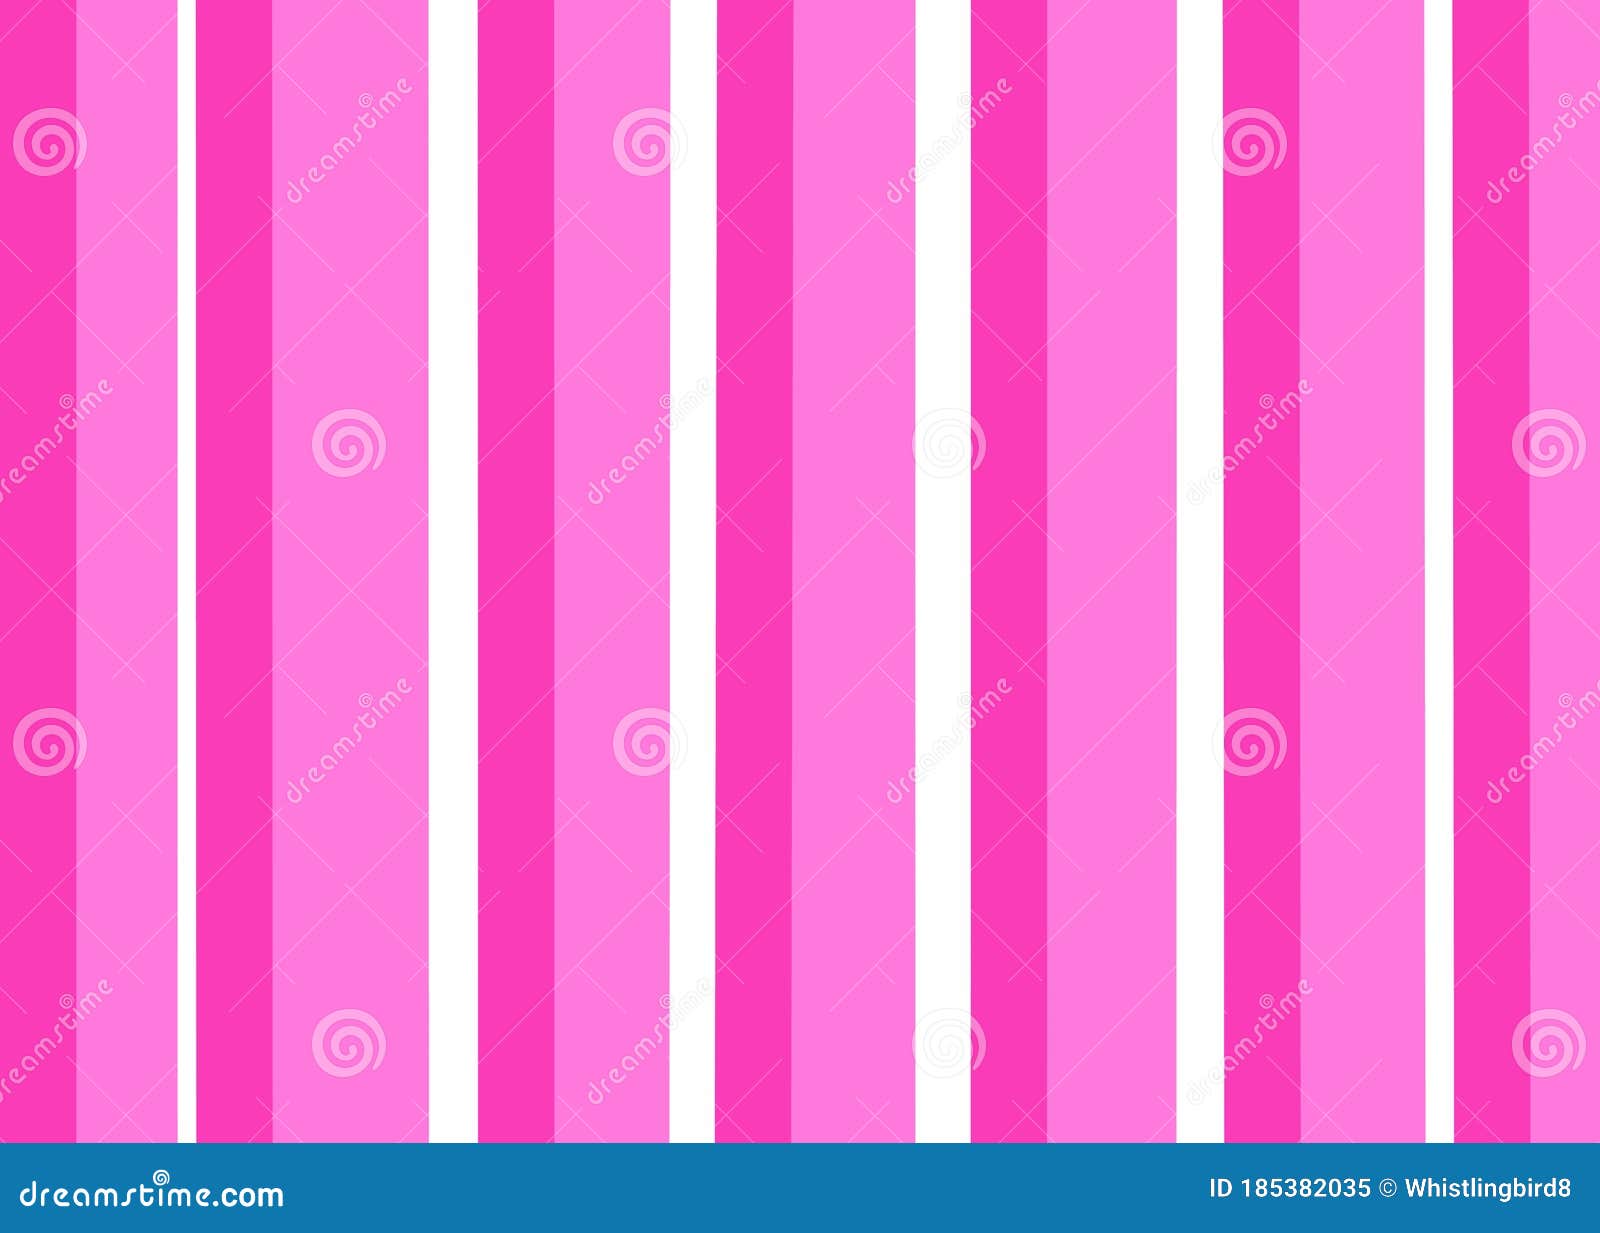 Fondo De Pantalla De Color Rosa Y Blanco Rayado Con Ilustración De Puntos  Stock de ilustración - Ilustración de color, extracto: 185382035